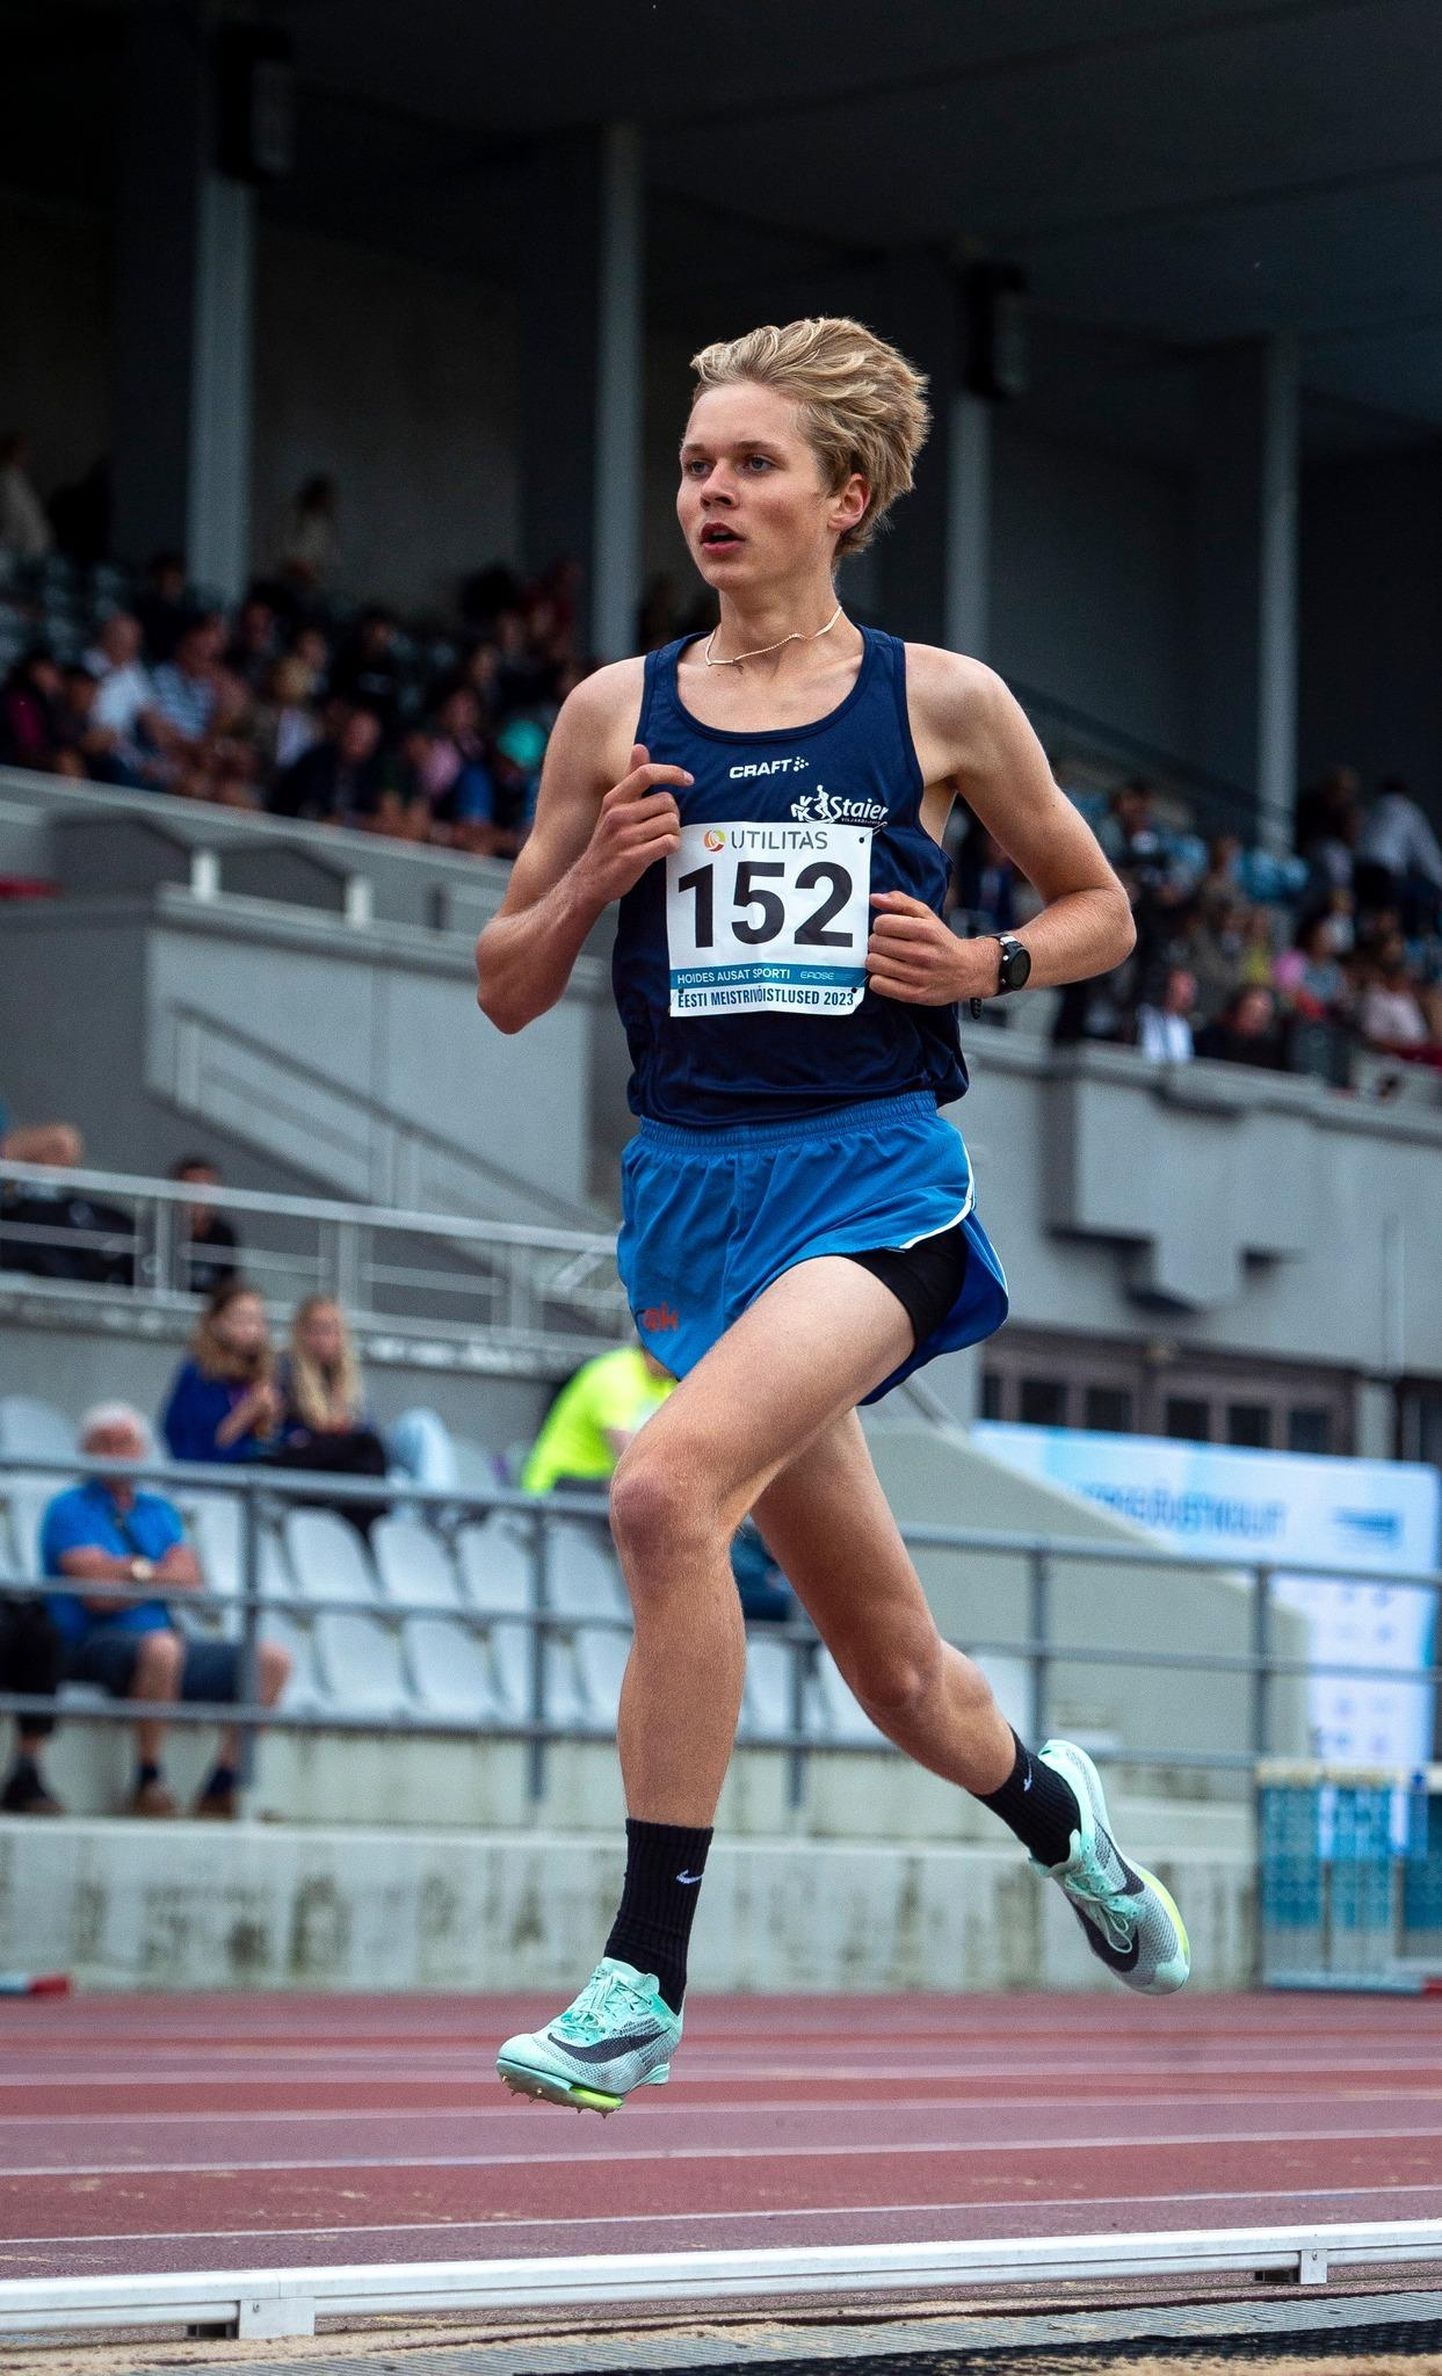 Järgmisel nädalal Euroopa U-20 vanuseklassi meistrivõistlustel Jeruusalemmas võistlev Morten Siht teenis Eesti meistrivõistlustel meeste 5000 meetri jooksus isikliku tippmargiga hõbemedali.